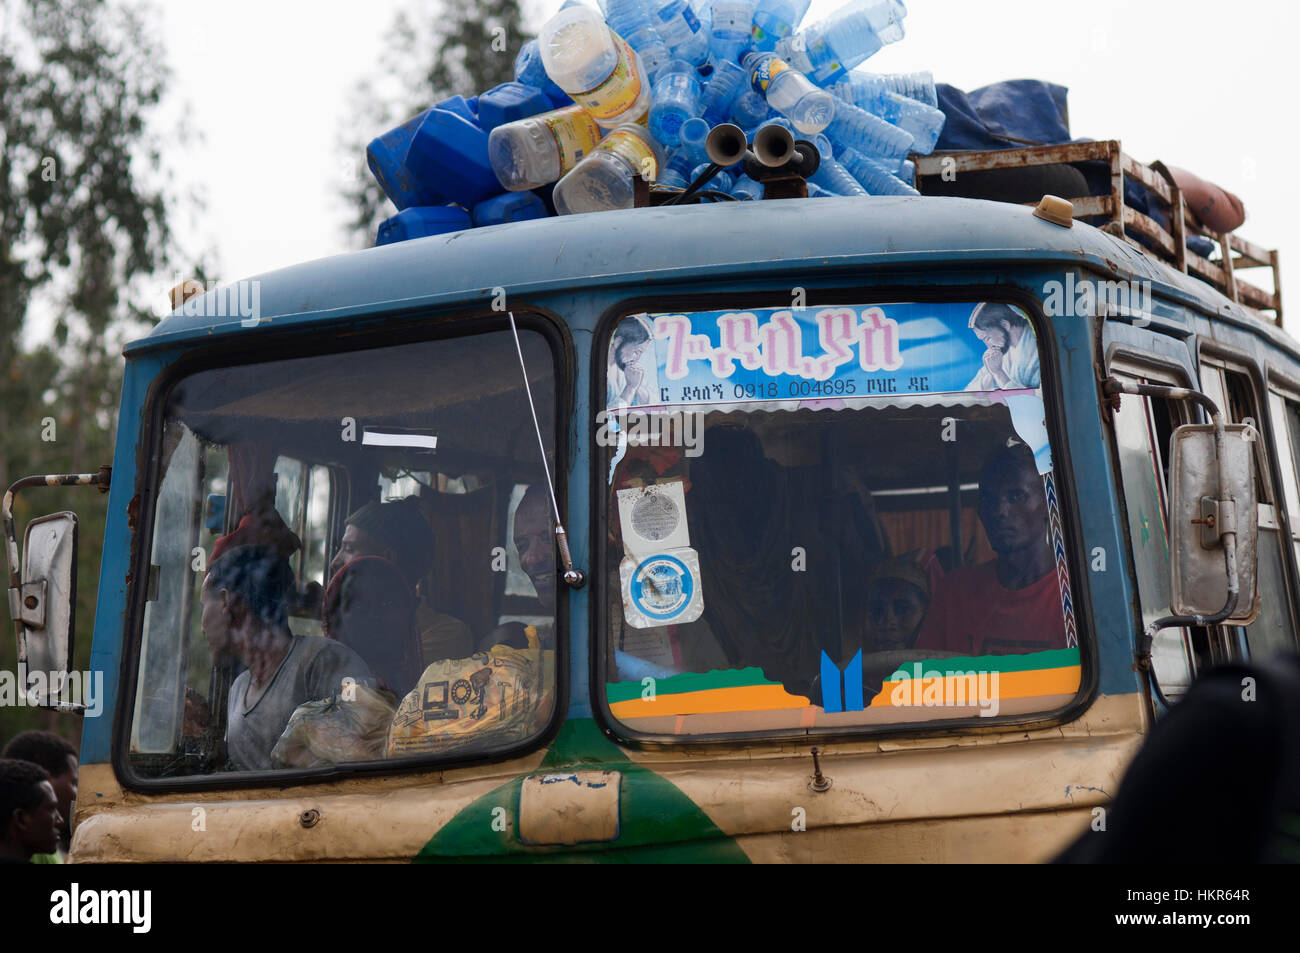 Tis Isat o Cataratas del Nilo Azul, Bahar Dar, Etiopía, África. Uno de los típicos autobuses de Etiopía atestados de gente y todo lo que puede ser tr Foto de stock